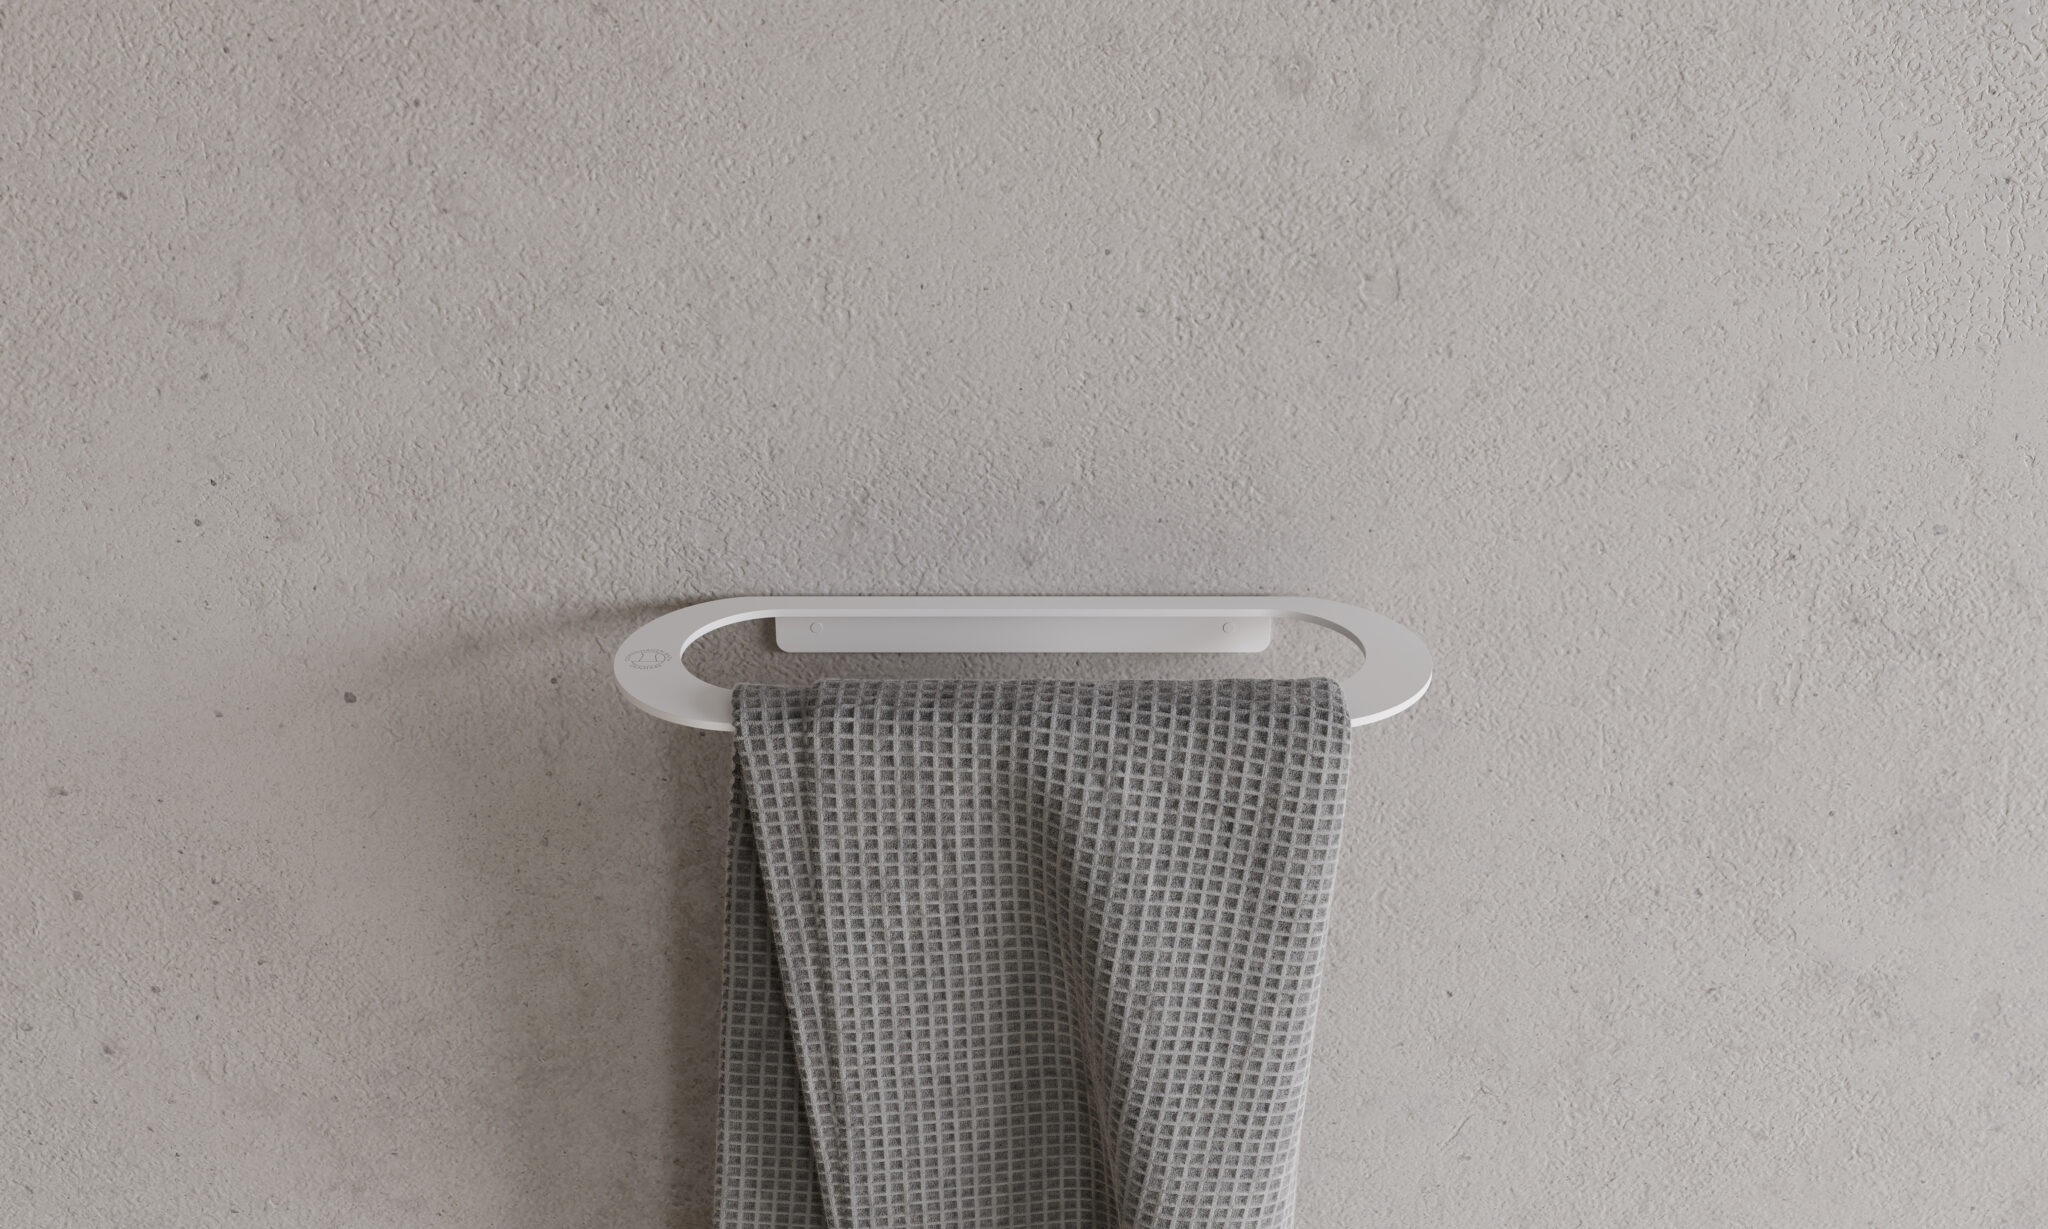 Copenhagen Bath tilbyr et bredt utvalg av eksklusivt tilbehør til badet ditt. Med fokus på en elegant og moderne skandinavisk stil kombinert med høy kvalitet, gir dette produkter som er både funksjonelle og stilfulle.